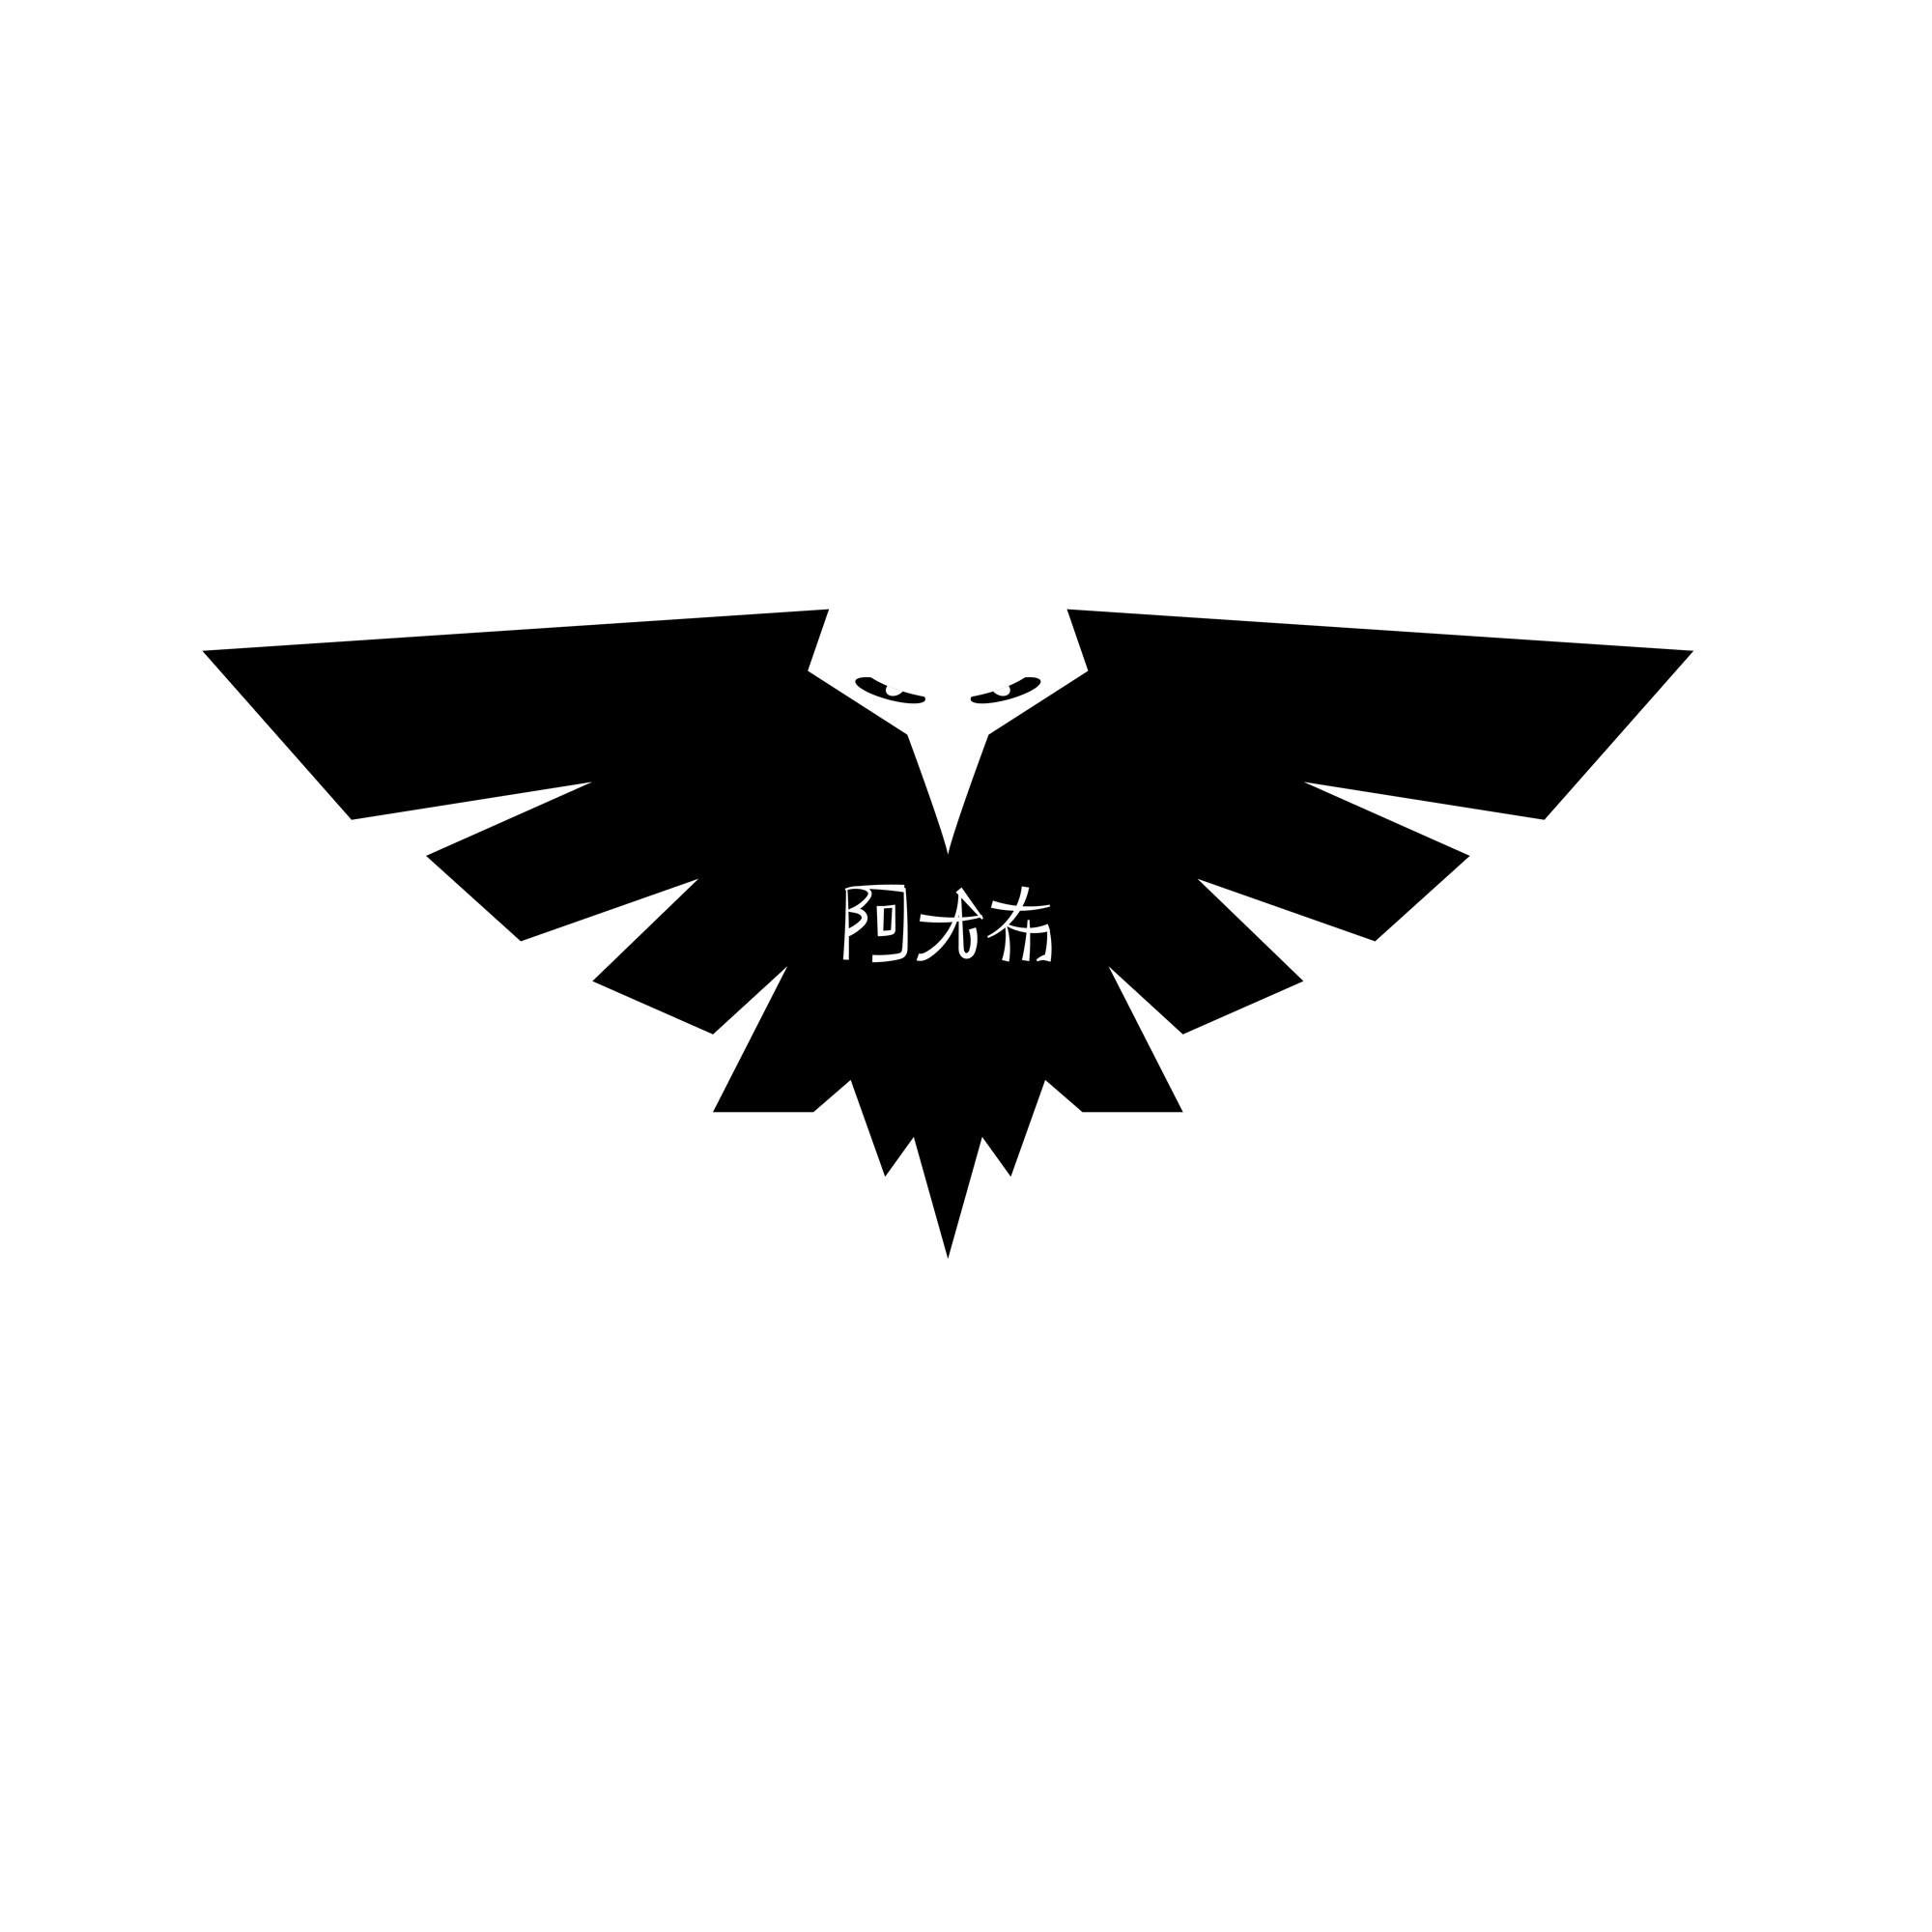 Black Line Eagle Logo - Eagle Clothing Line - T-Shirt Logo Design - JM Graphic Design